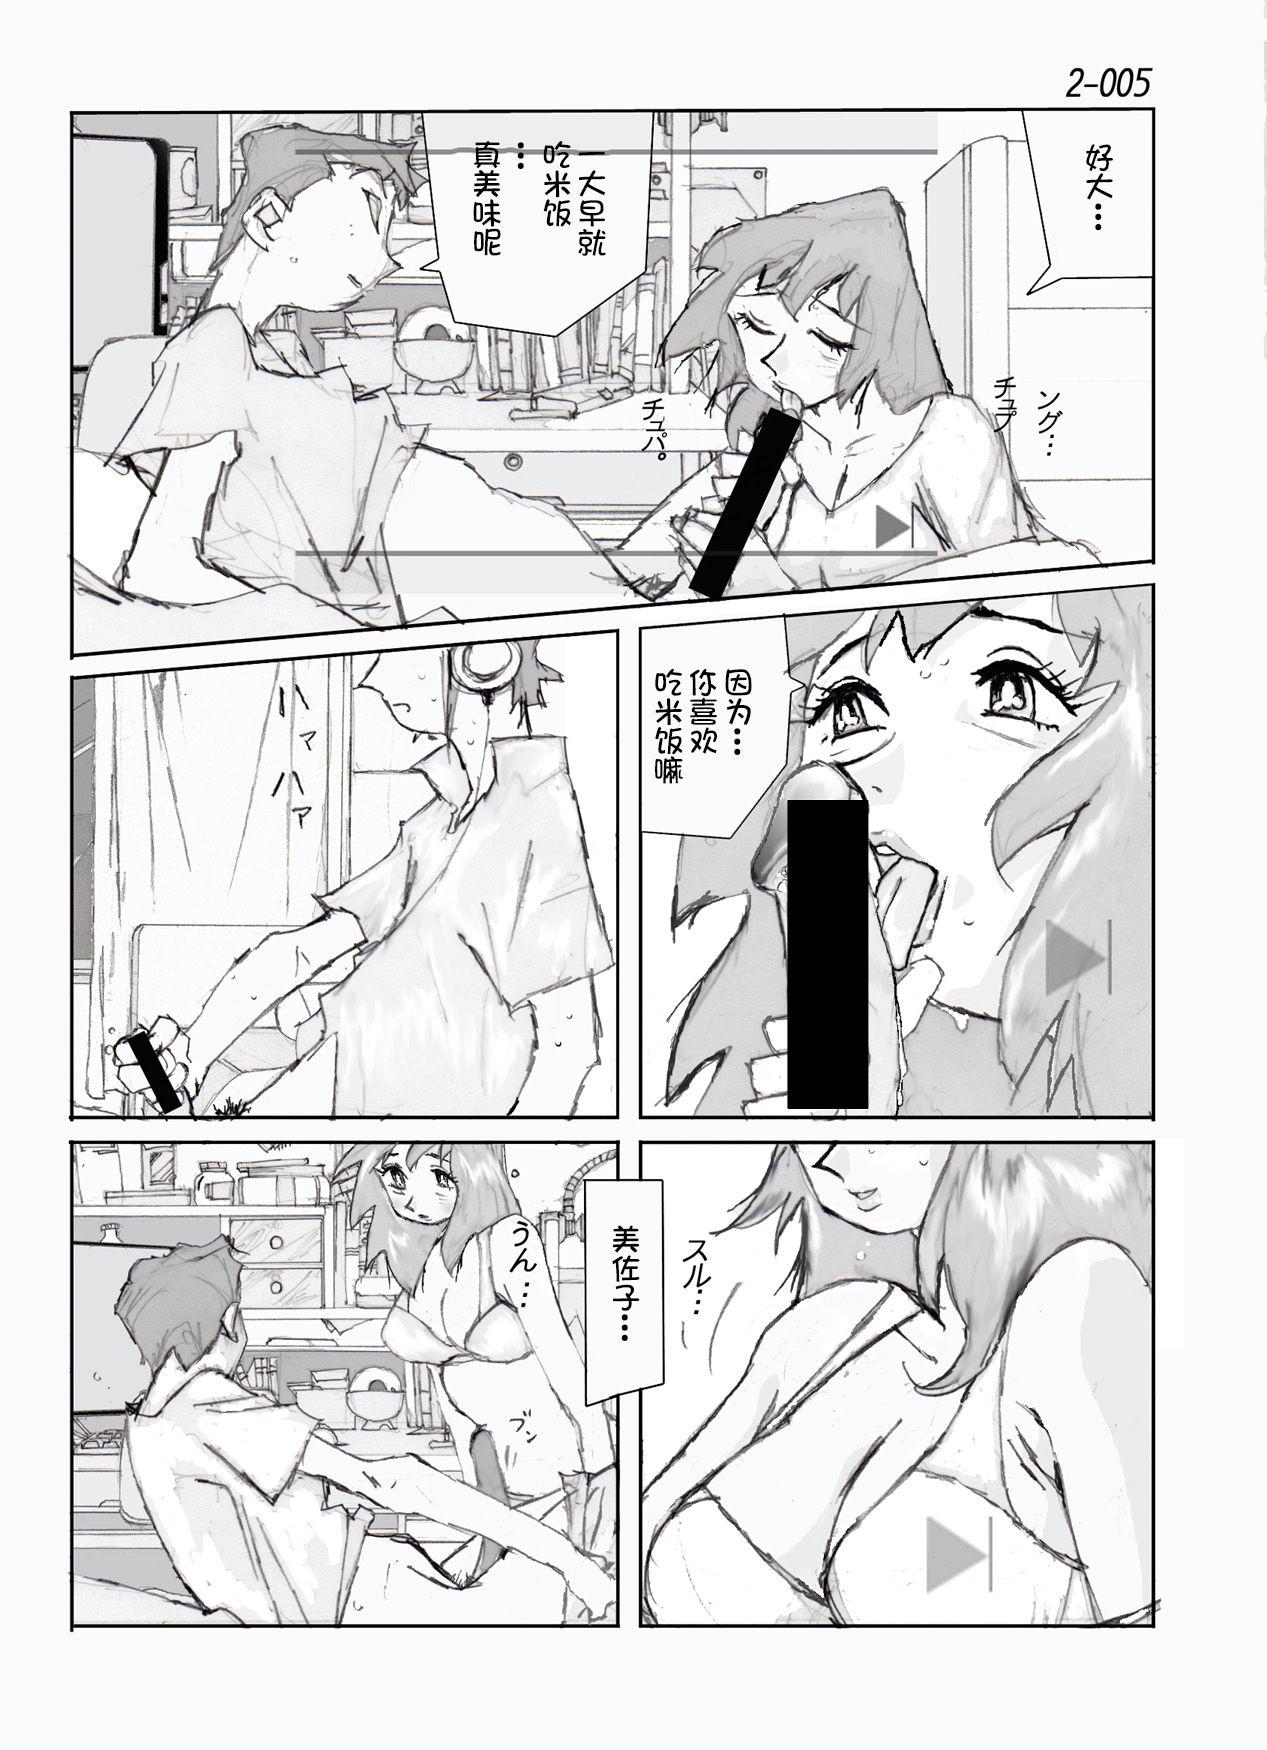 Playing Kamo no Aji - Misako 2 - Original Nurugel - Page 6